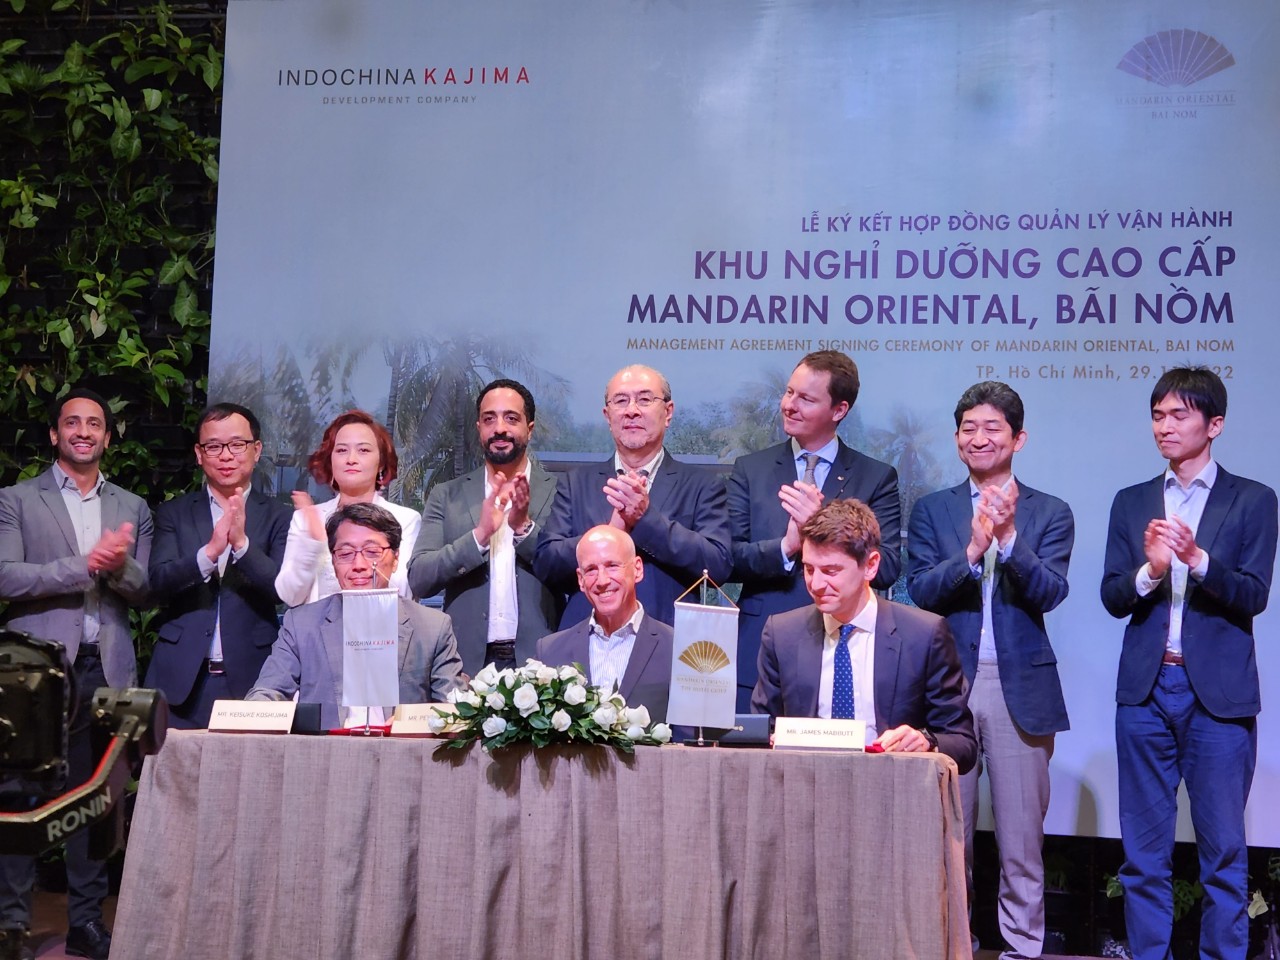 Lễ ký kết giữa Indochina Kajima và Tập đoàn Mandarin Oriental để quản lý dự án nghỉ dưỡng Mandarin Oriental, Bãi Nồm.